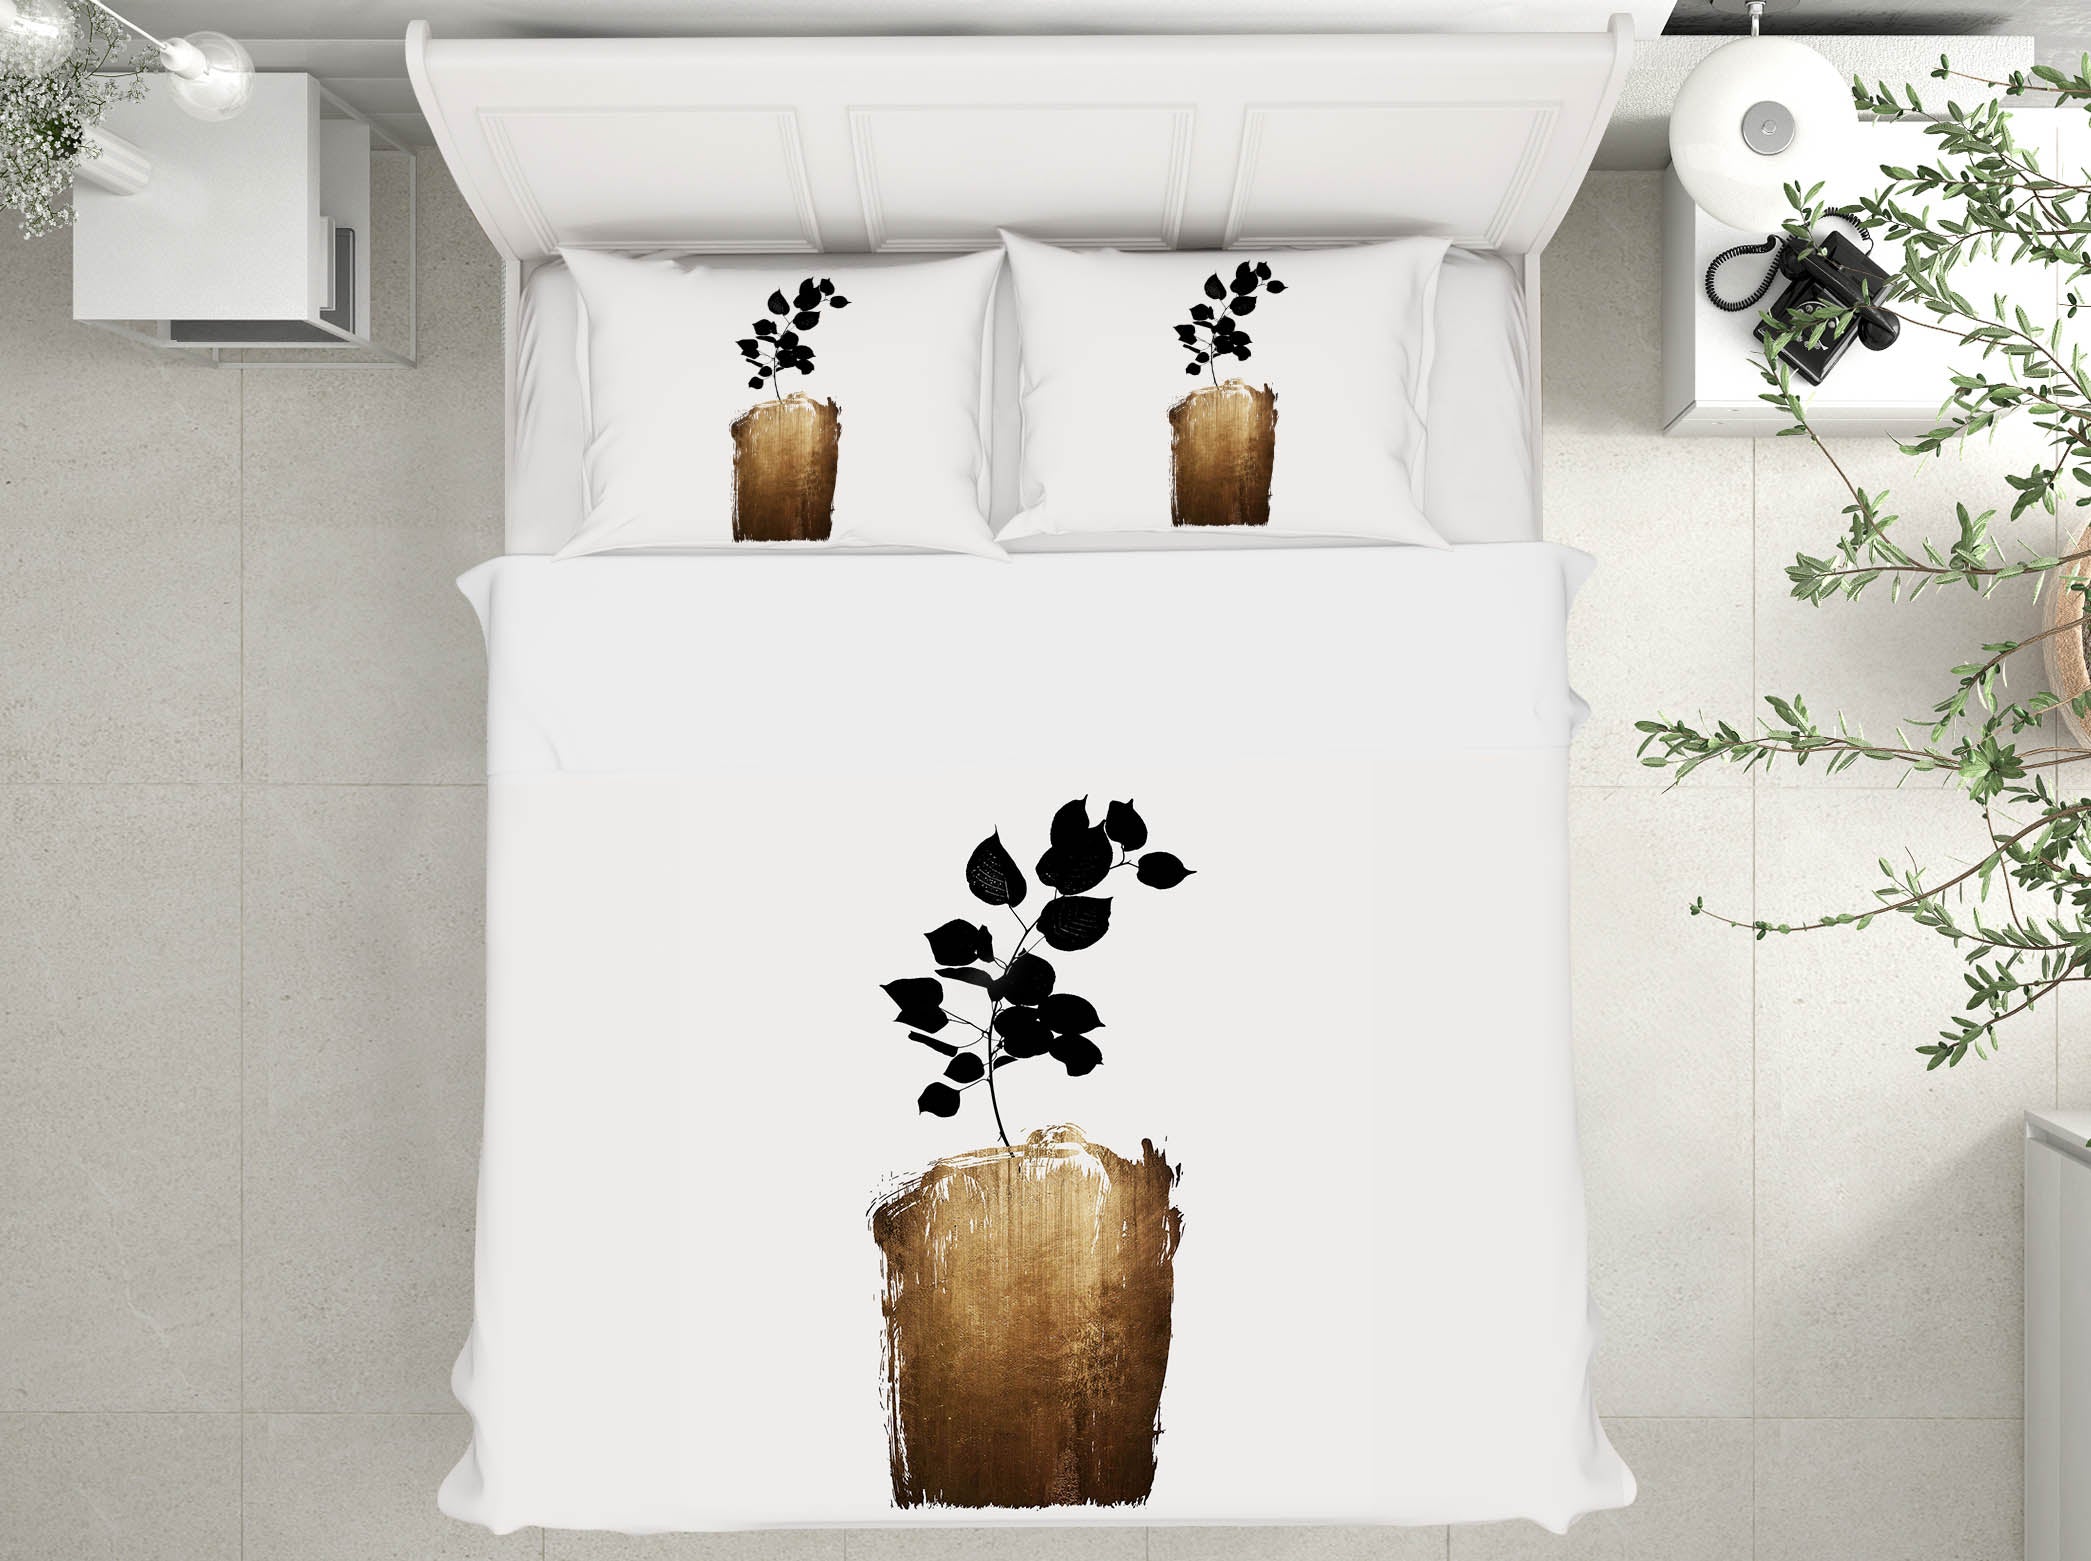 3D Graffiti Land 207 Boris Draschoff Bedding Bed Pillowcases Quilt